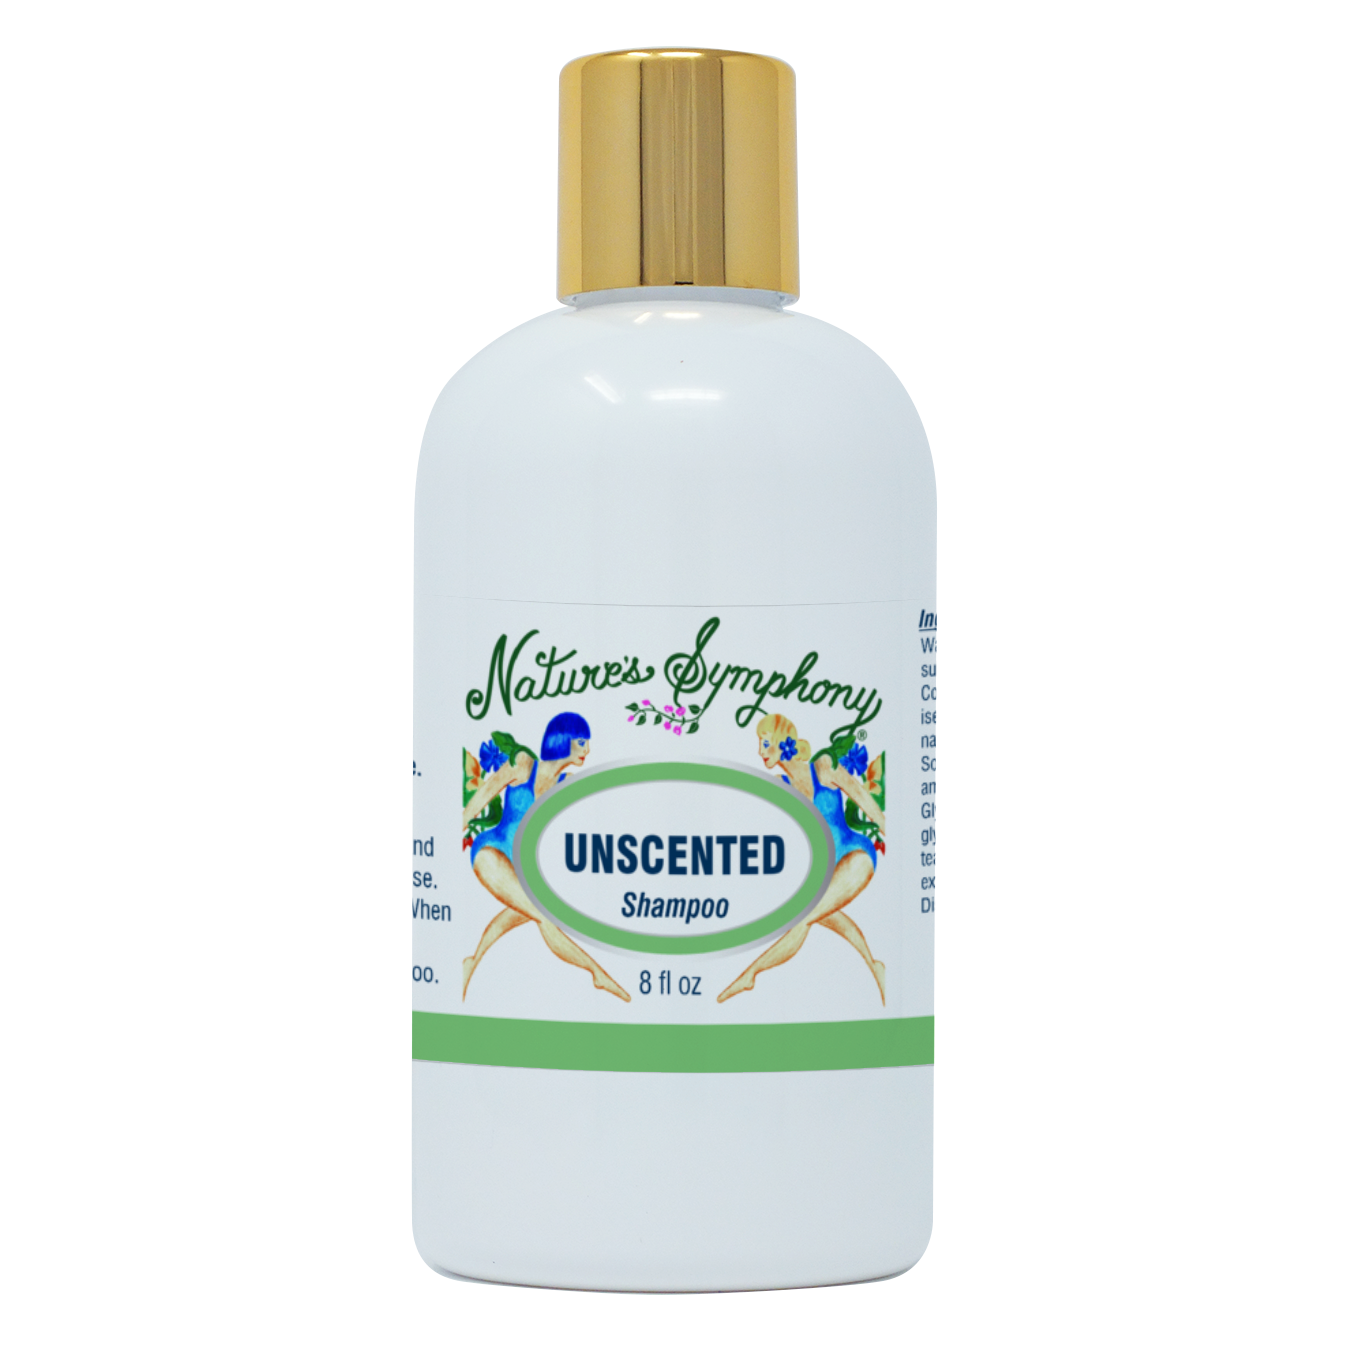 Unscented, Organic Shampoo - 8 fl. oz. (236ml)